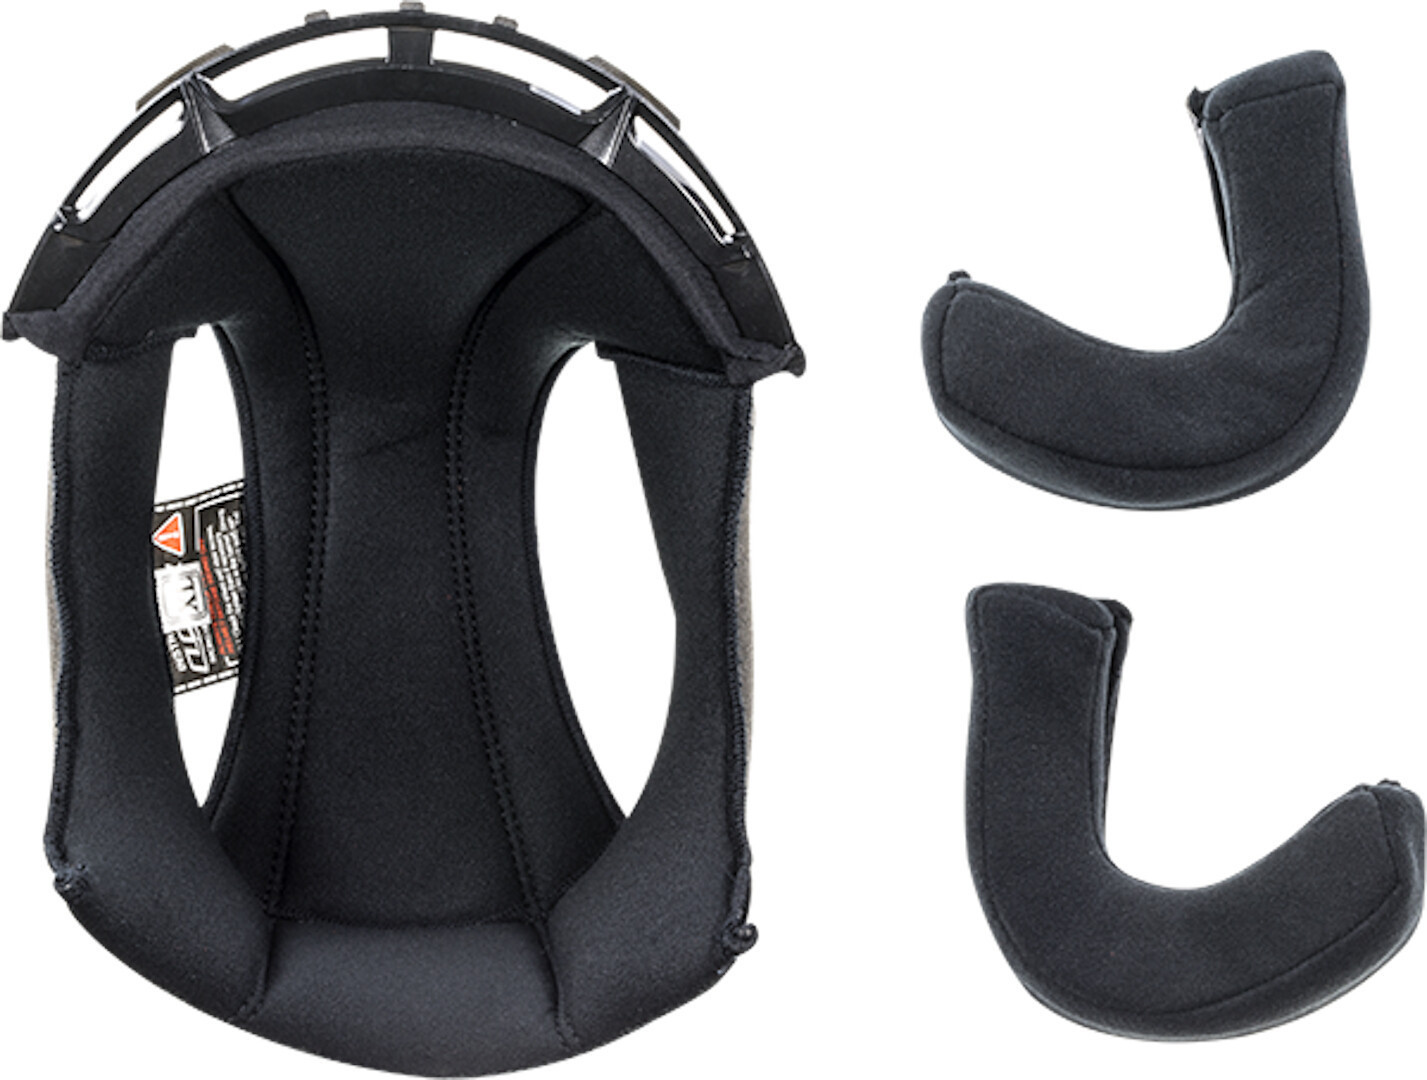 Подкладка LS2 OF599 Spitfire внутренняя для шлема внутренняя подкладка для шлема защитная губка буферная набивка для мотоцикла велосипеда безопасный для езды удобный коврик для шлема